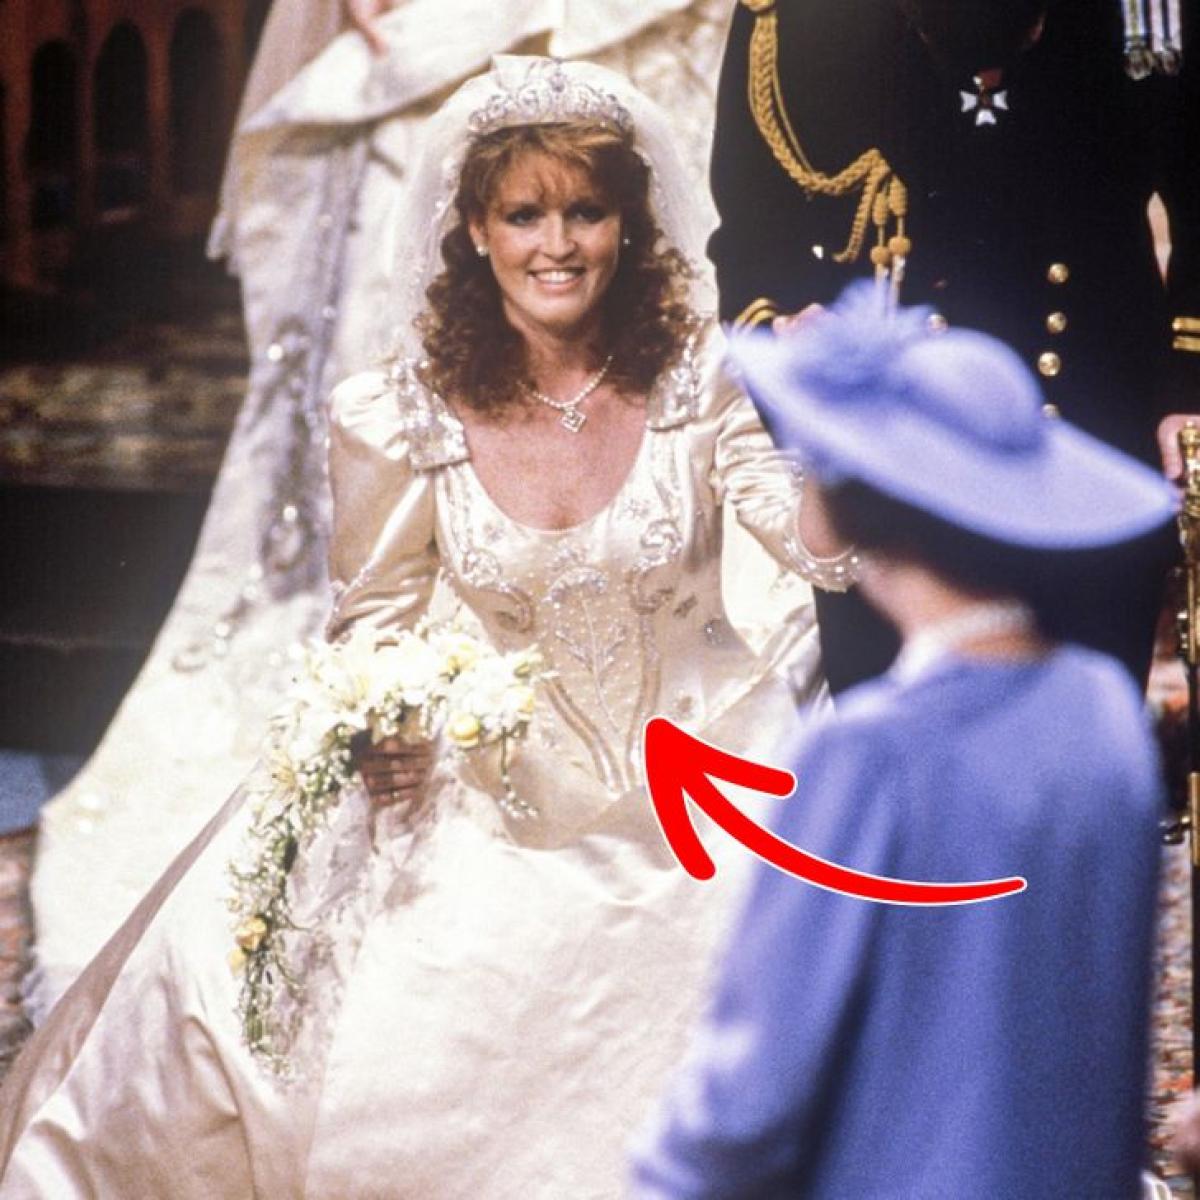 Những điều ít người biết về đám cưới Hoàng gia Anh - 3